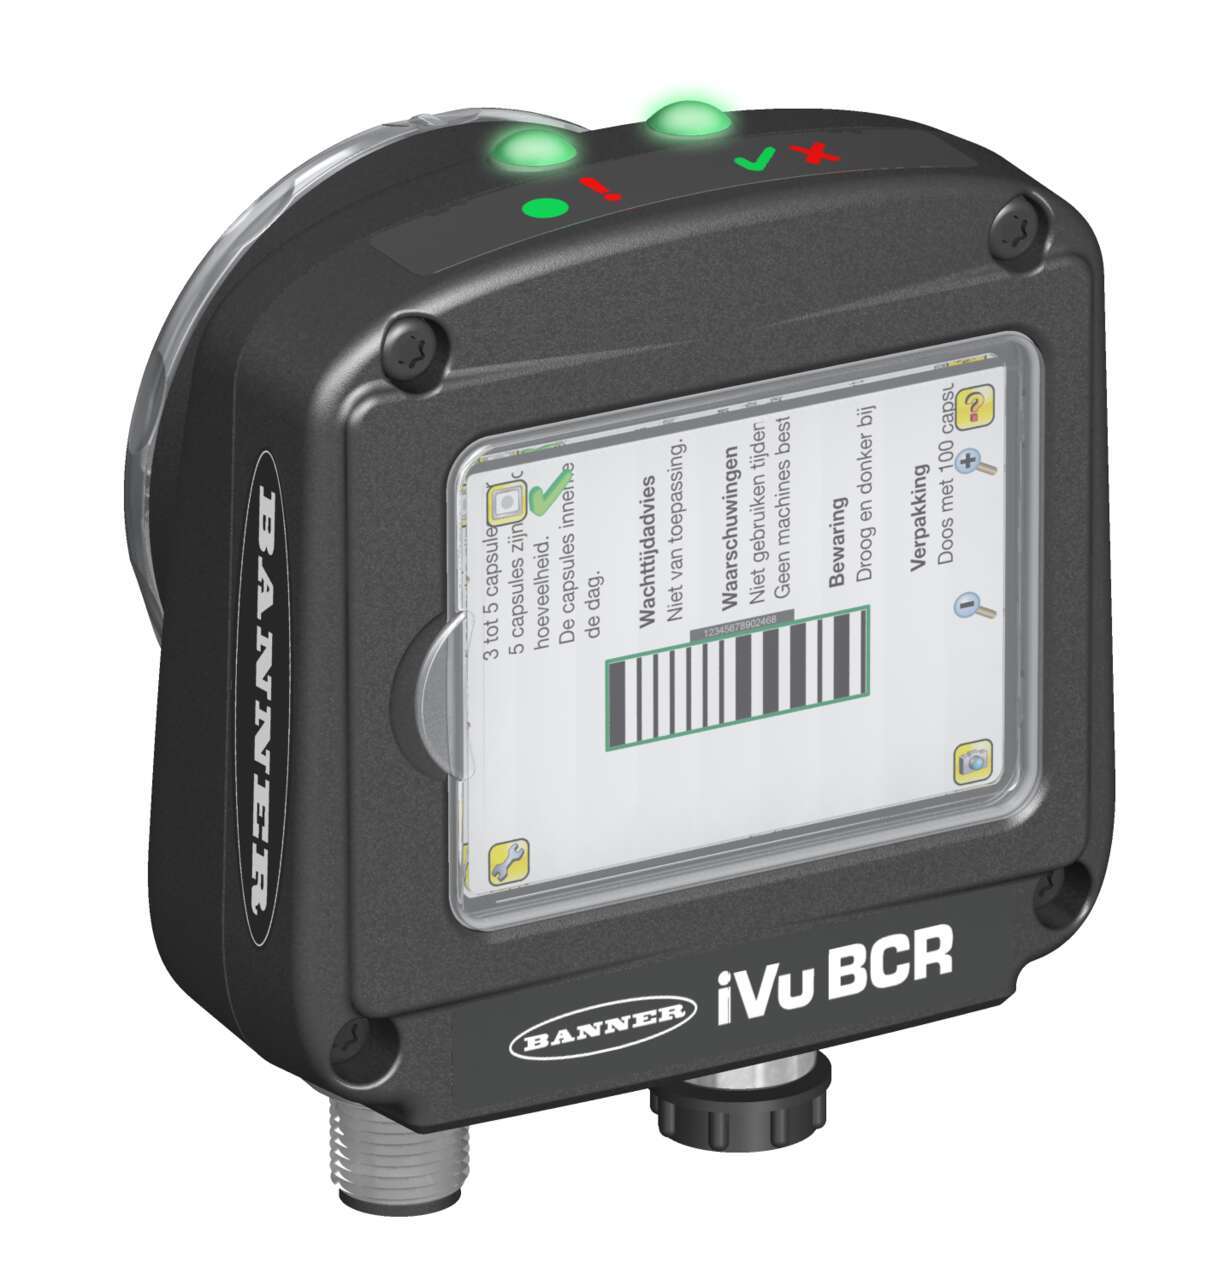 iVu BCR imager-based barcode reader